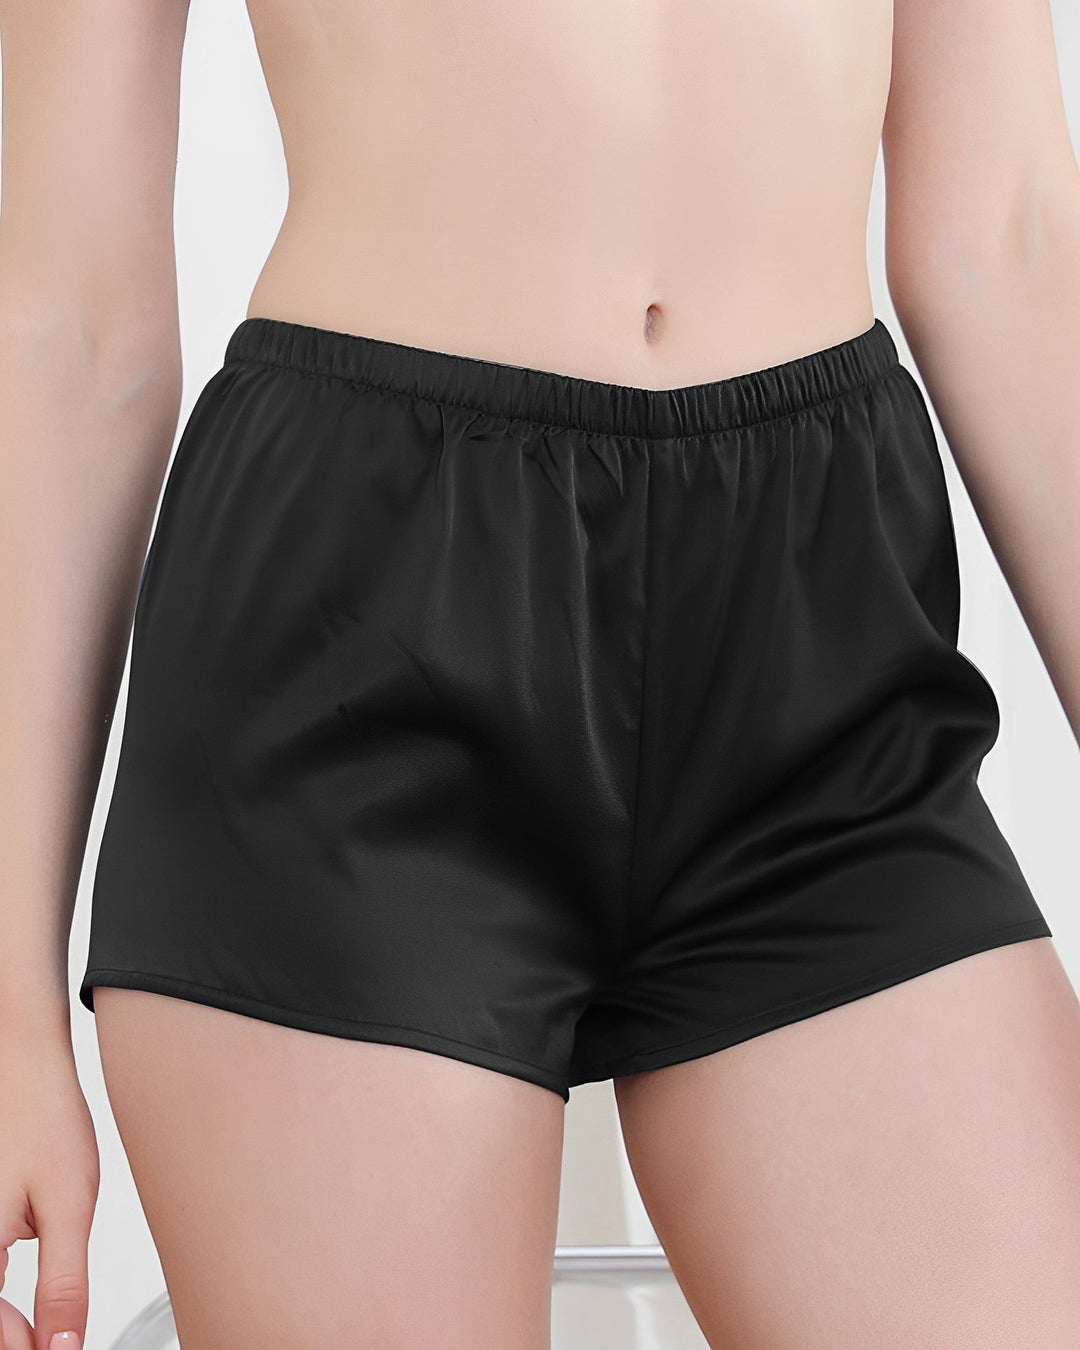 100% Mulberry Silk Underwear for Women - Breathable – SusanSilk